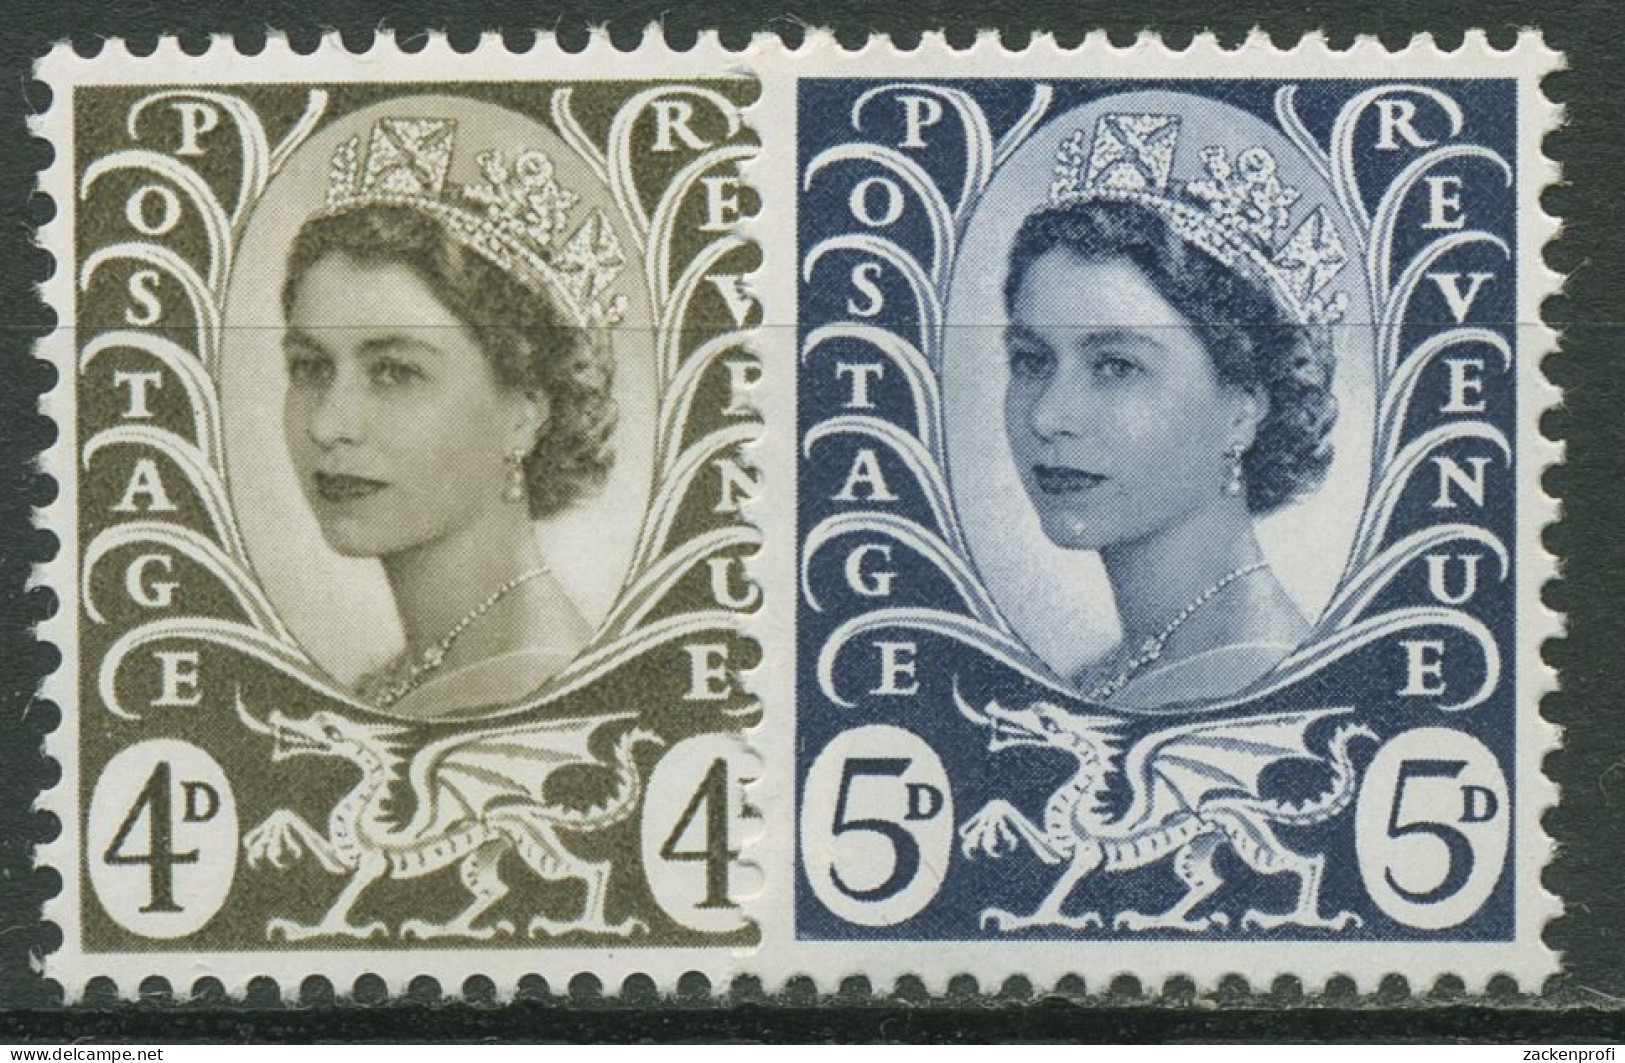 Großbritannien-Wales 1968 Königin Elisabeth II. 9/10 Postfrisch - Wales